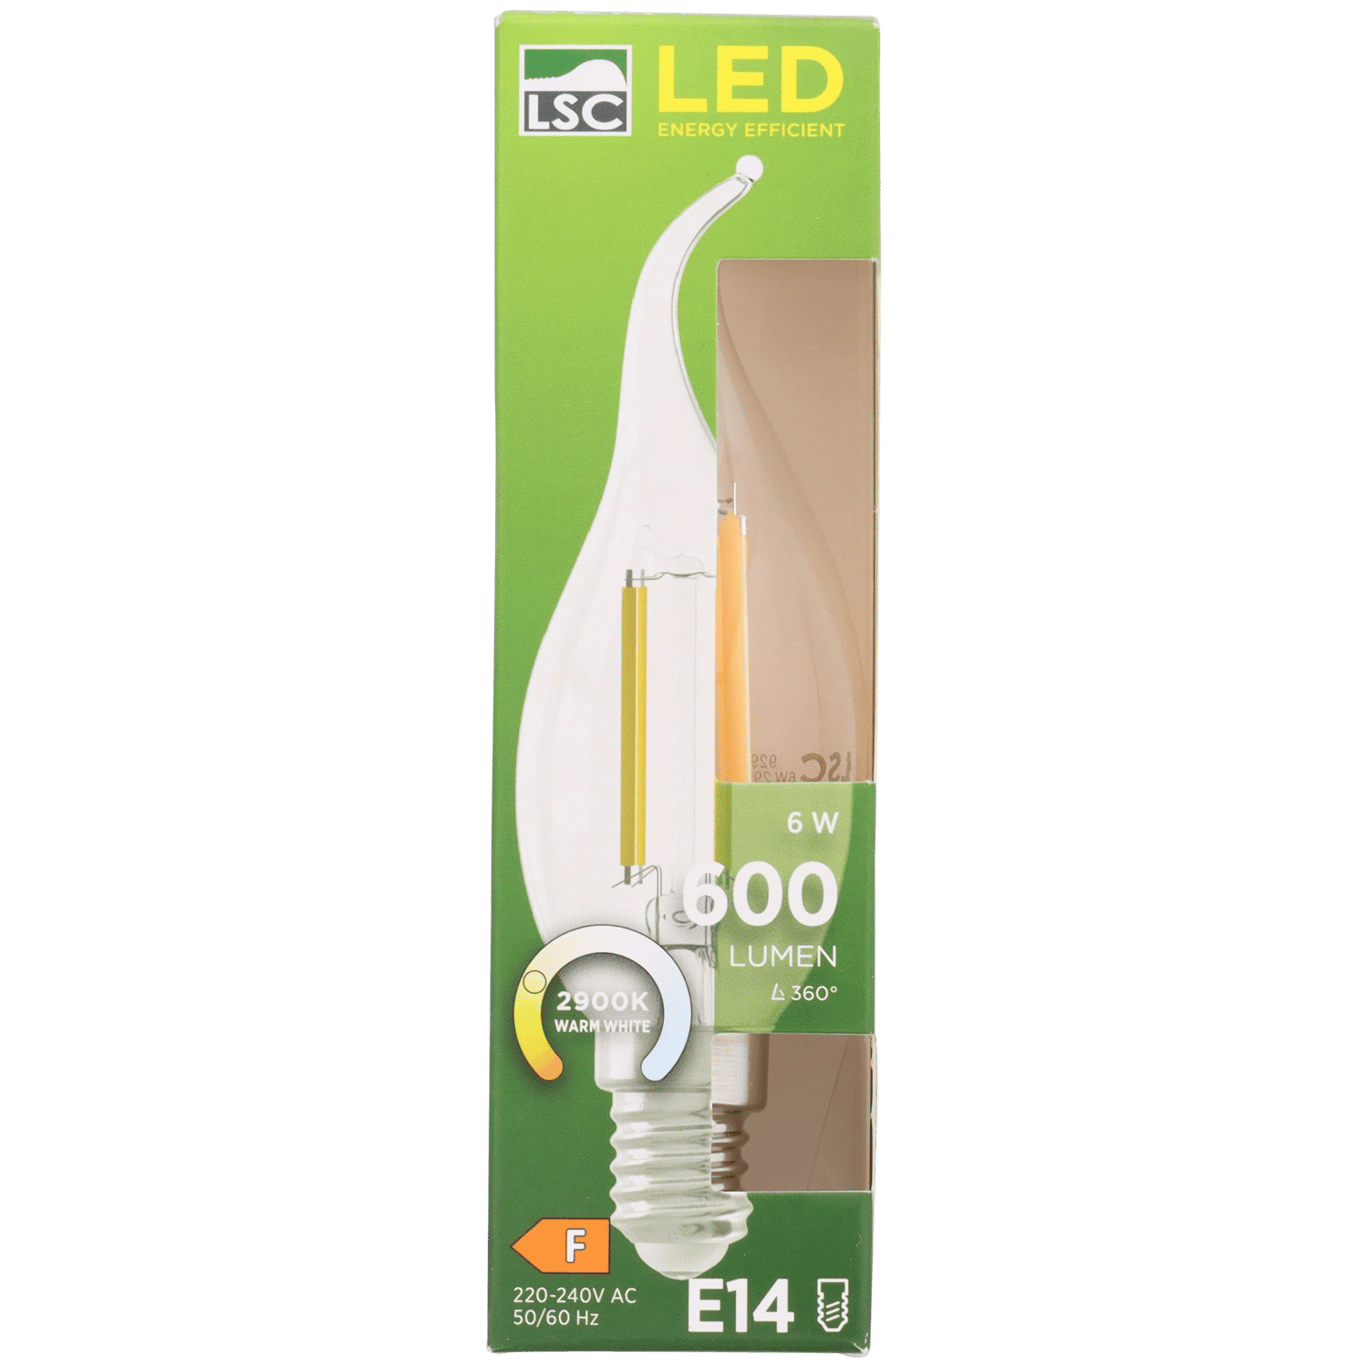 AIDS Pidgin Jeugd LED-Lampe mit E14-Fassung | Action.com